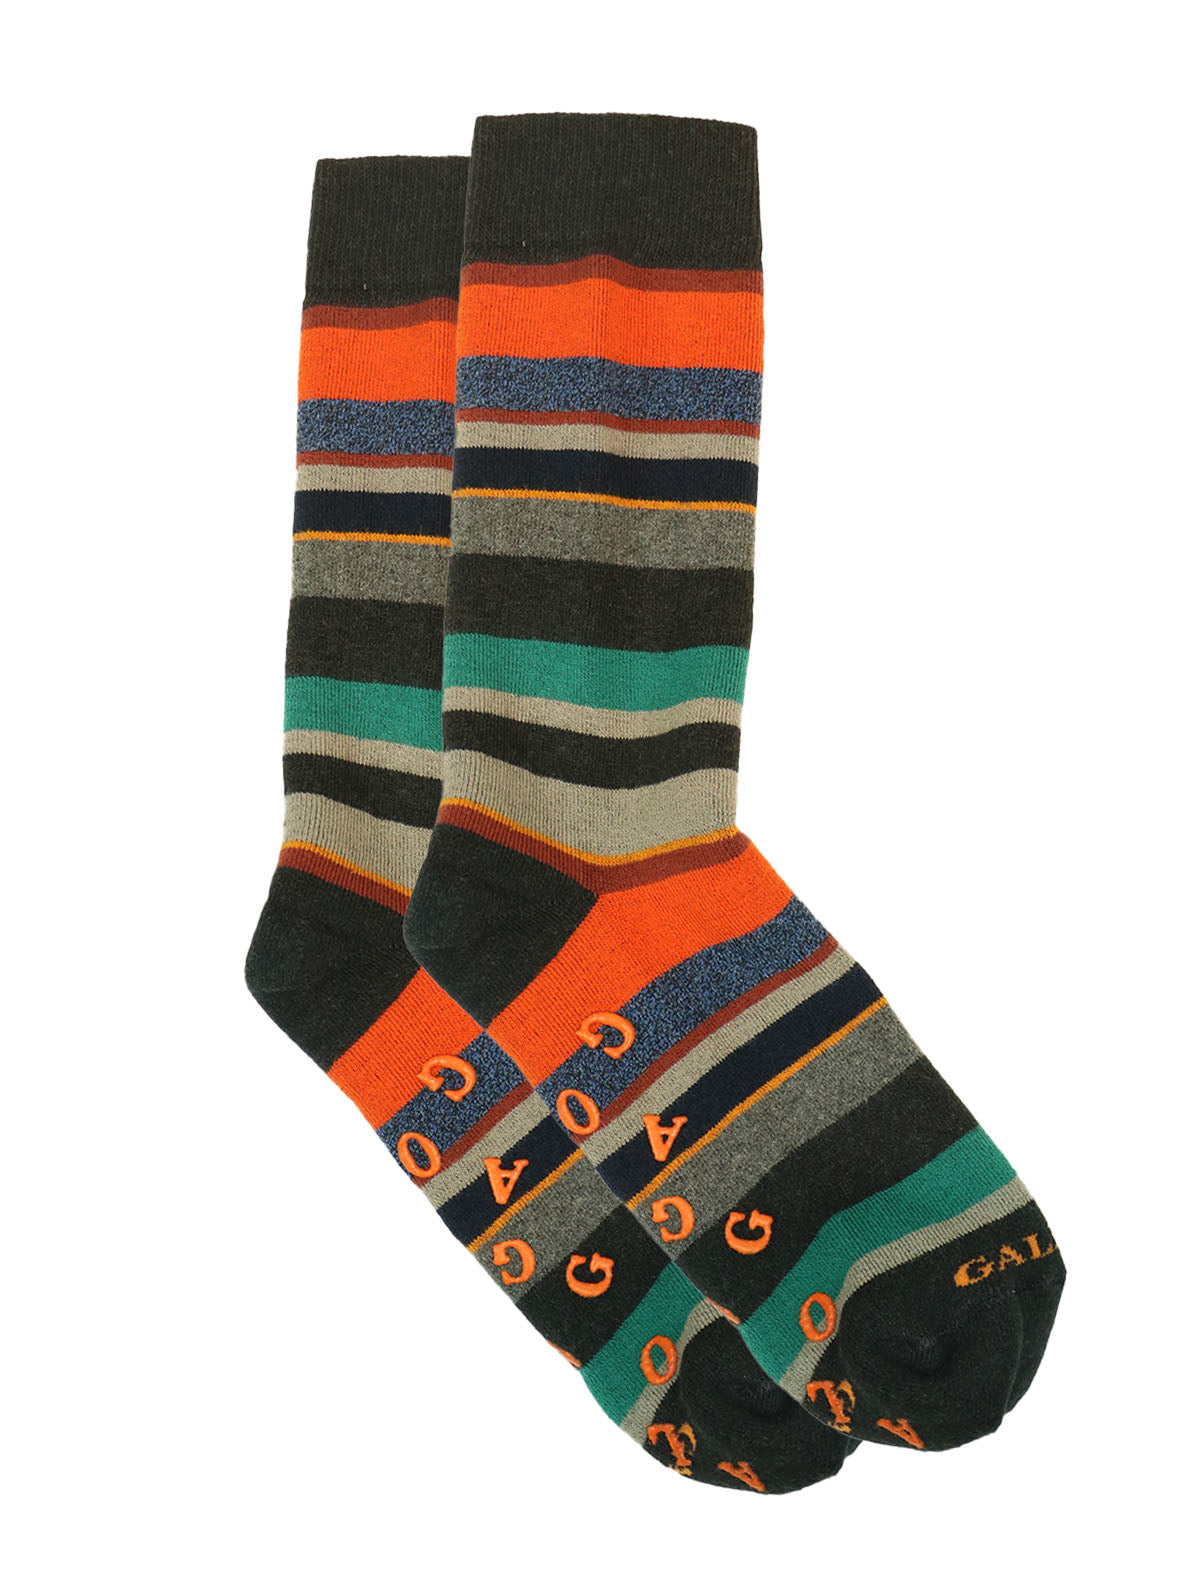 Gallo Socks in Black w/ Multi-Coloured Striped Print